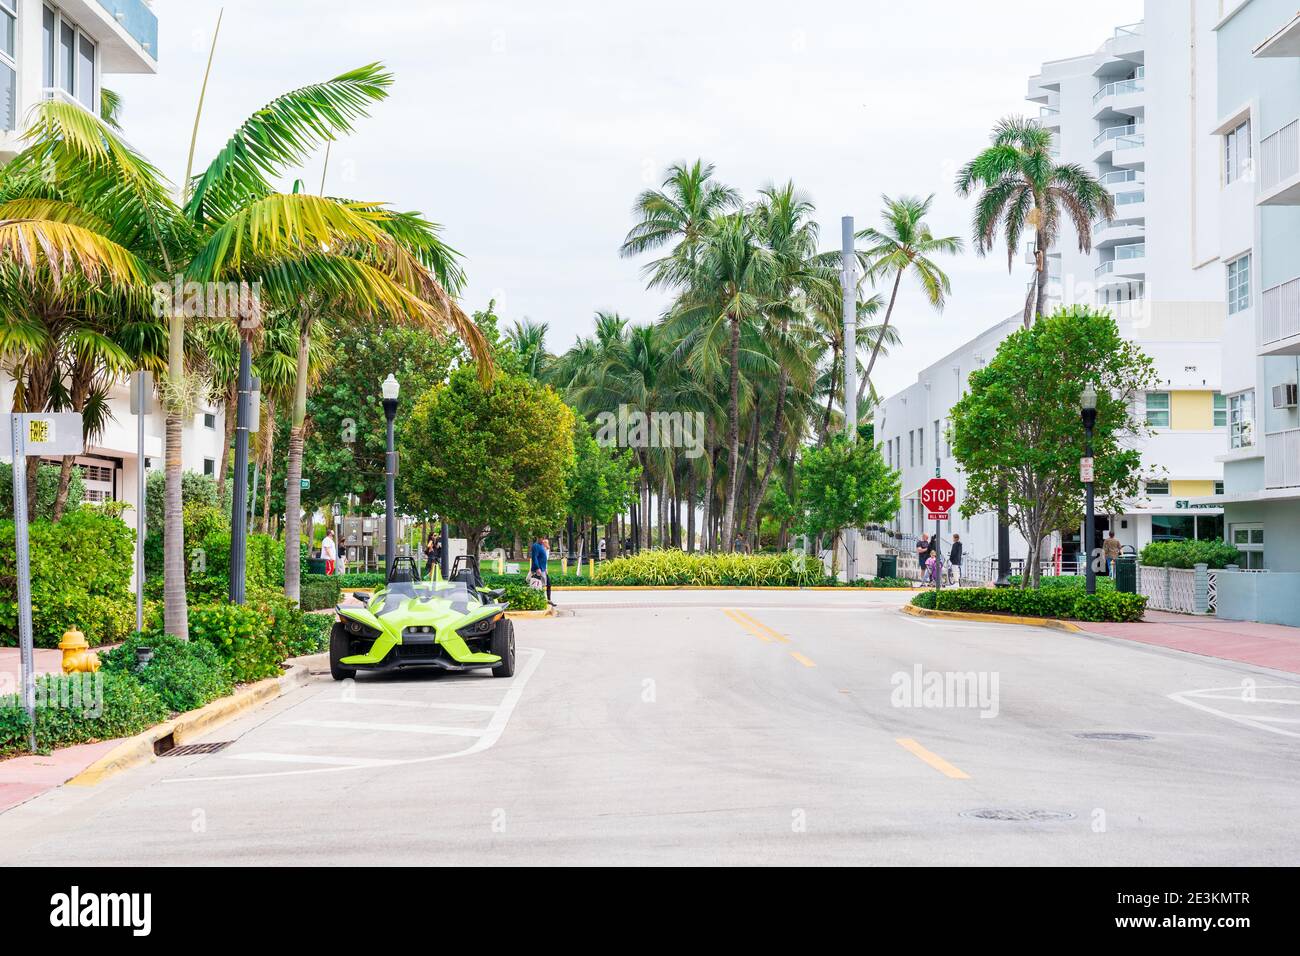 Ocean Drive, Miami - 4 janvier 2021 : rues tranquilles de South Beach pendant la pandémie du coronavirus. Banque D'Images